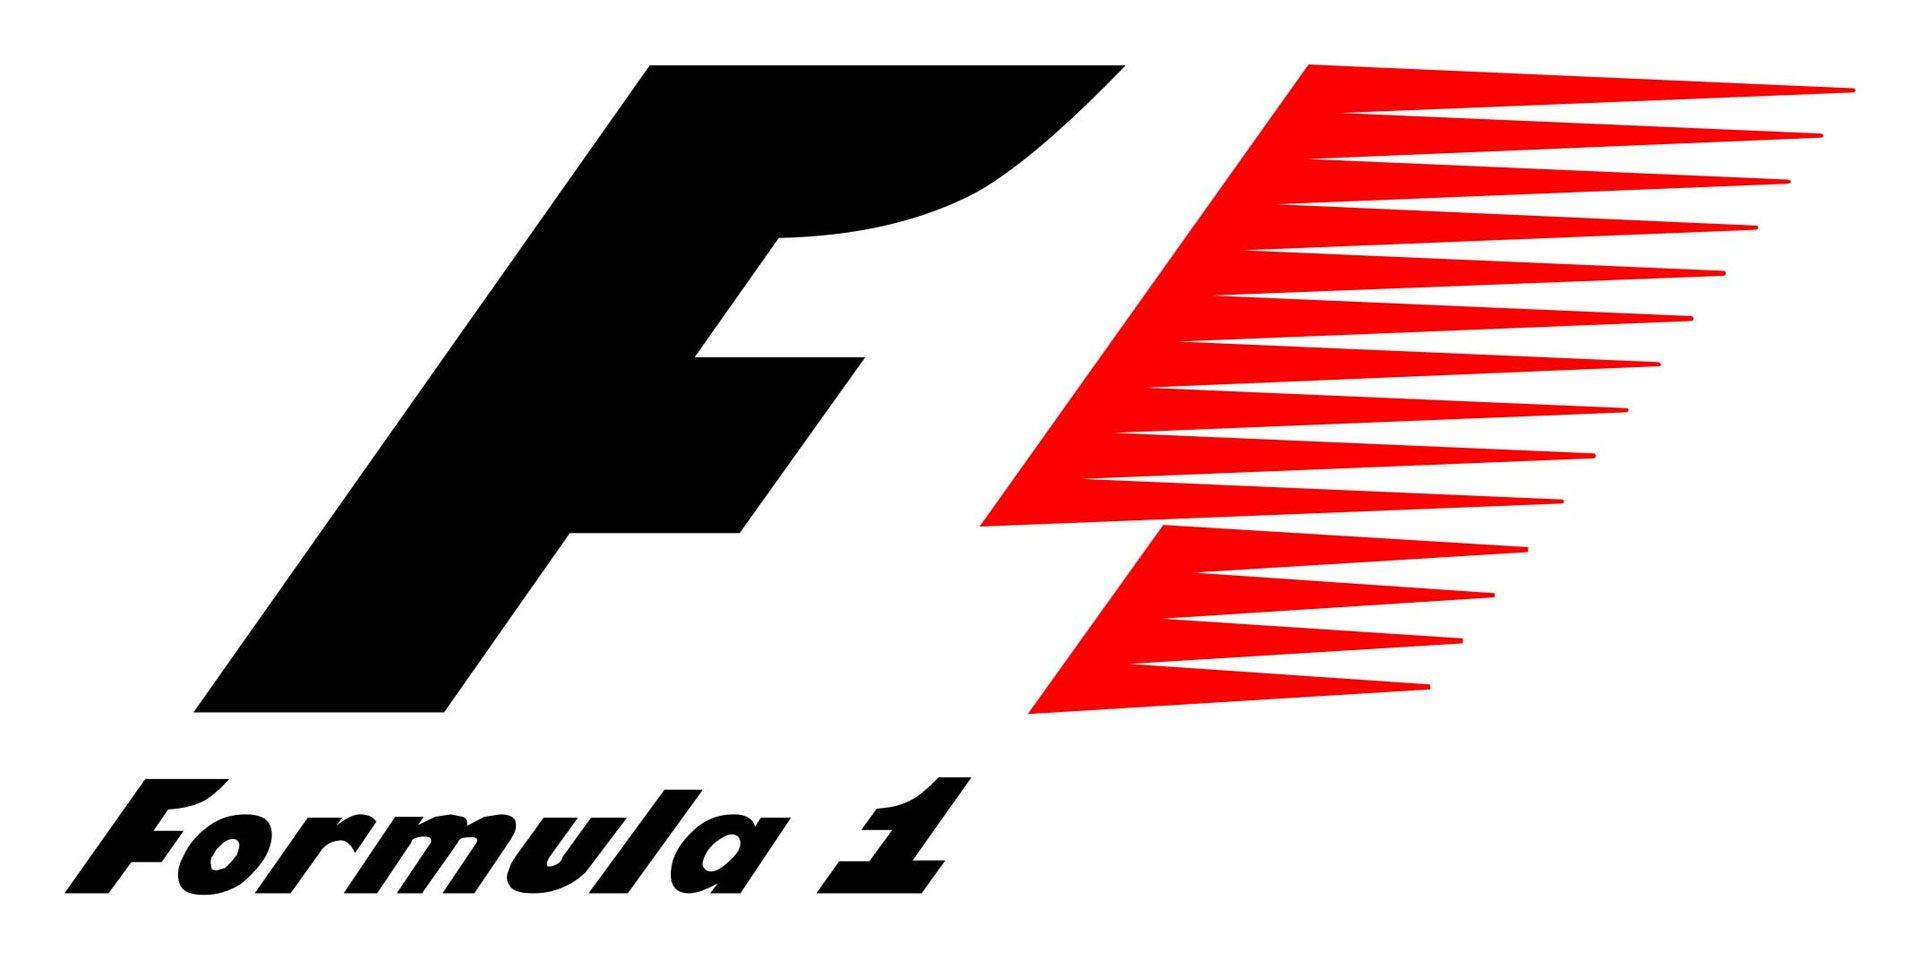 Sleek Racing Logo - Old F1 logo was 